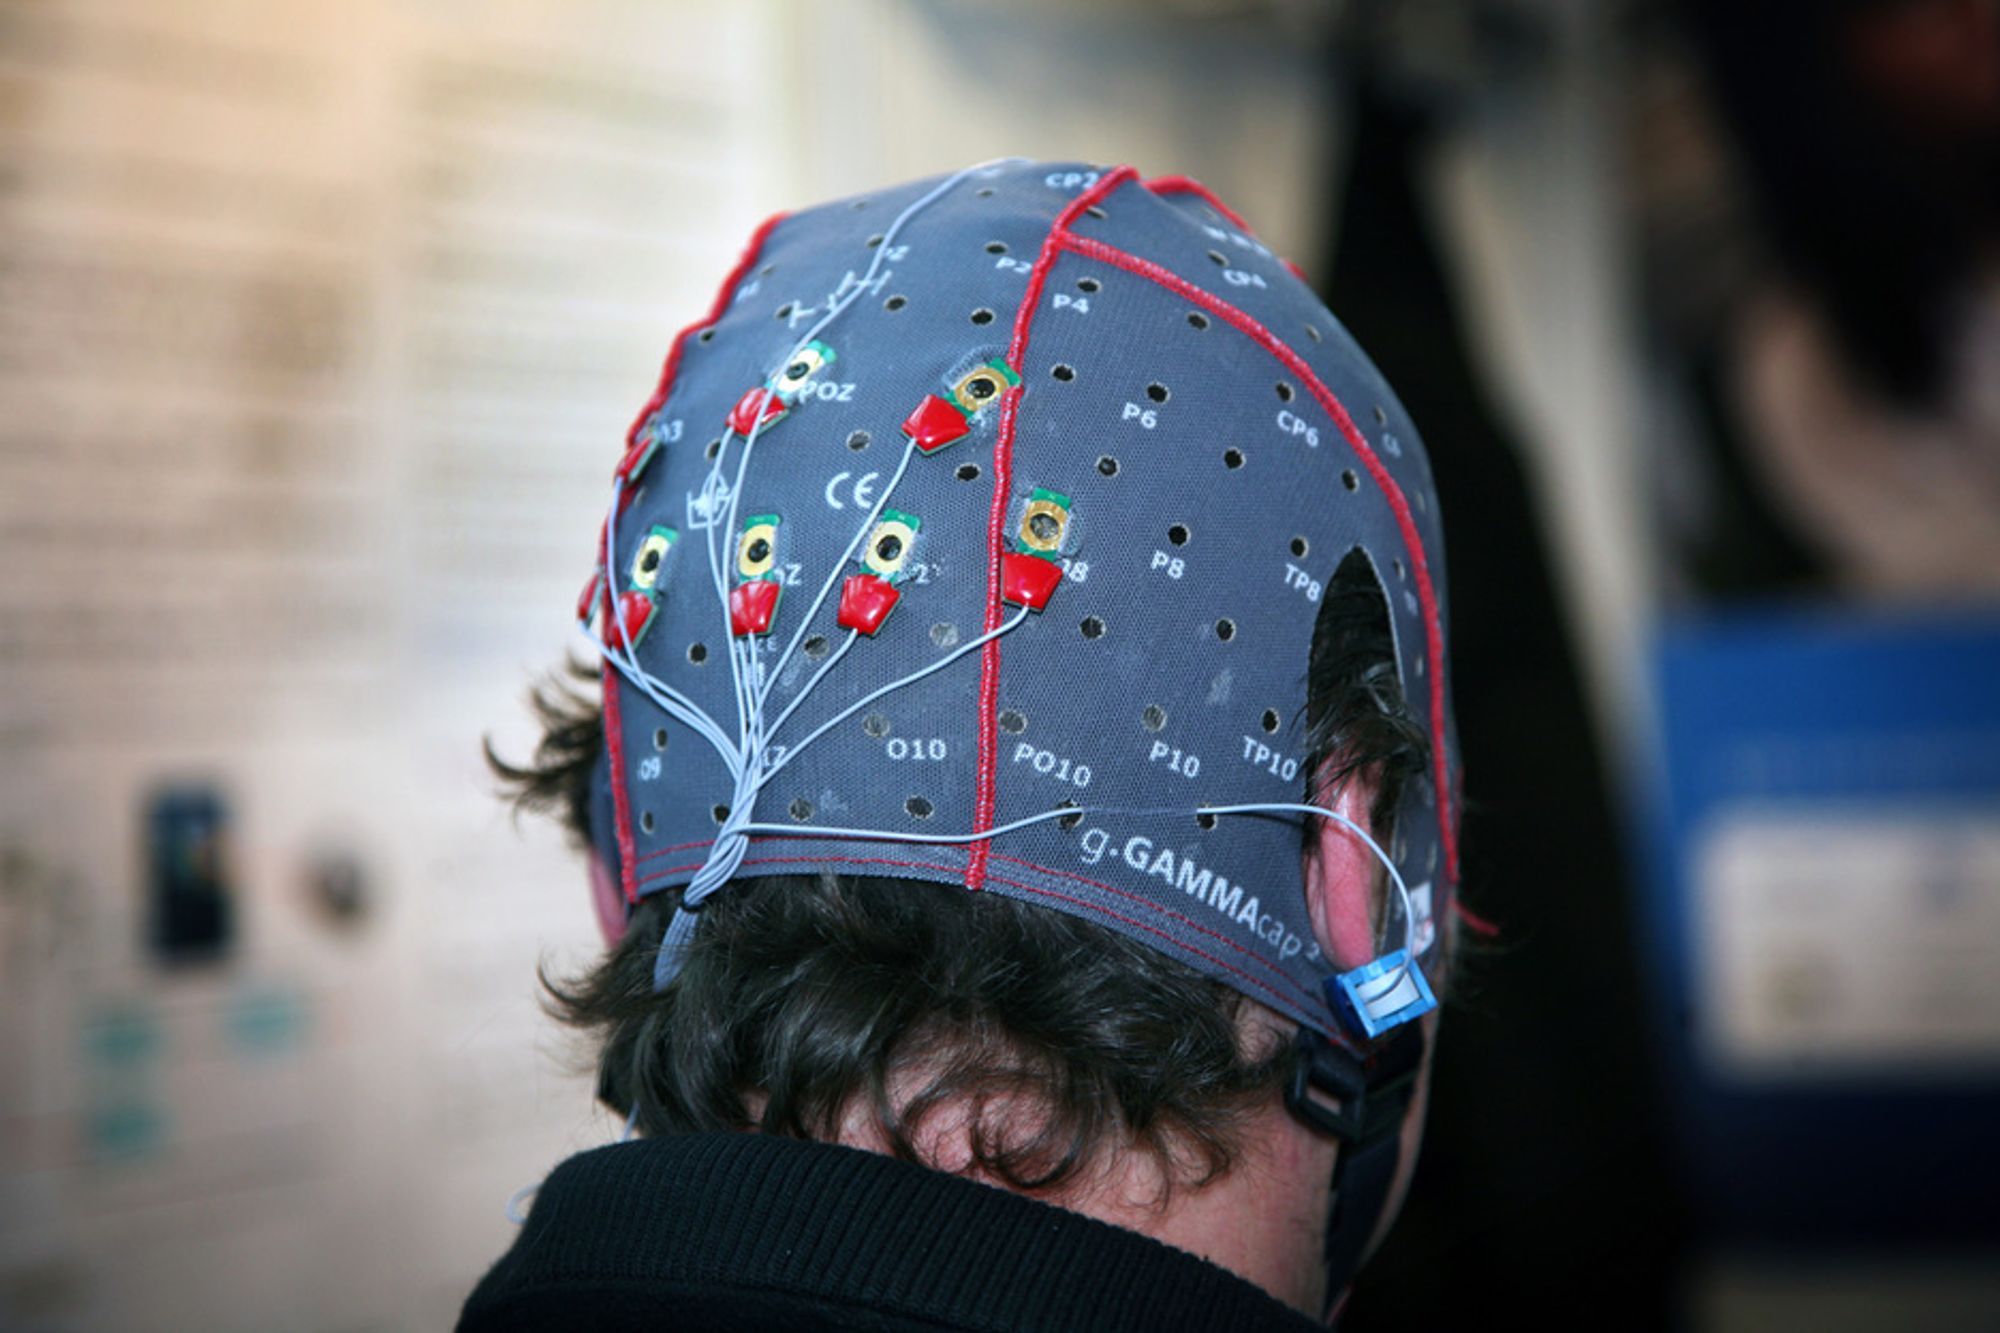 Guger Technologies EEG-hjelm KAN brukes til dataspill, men er foreløpig litt for treig til at det fungerer spesielt bra.